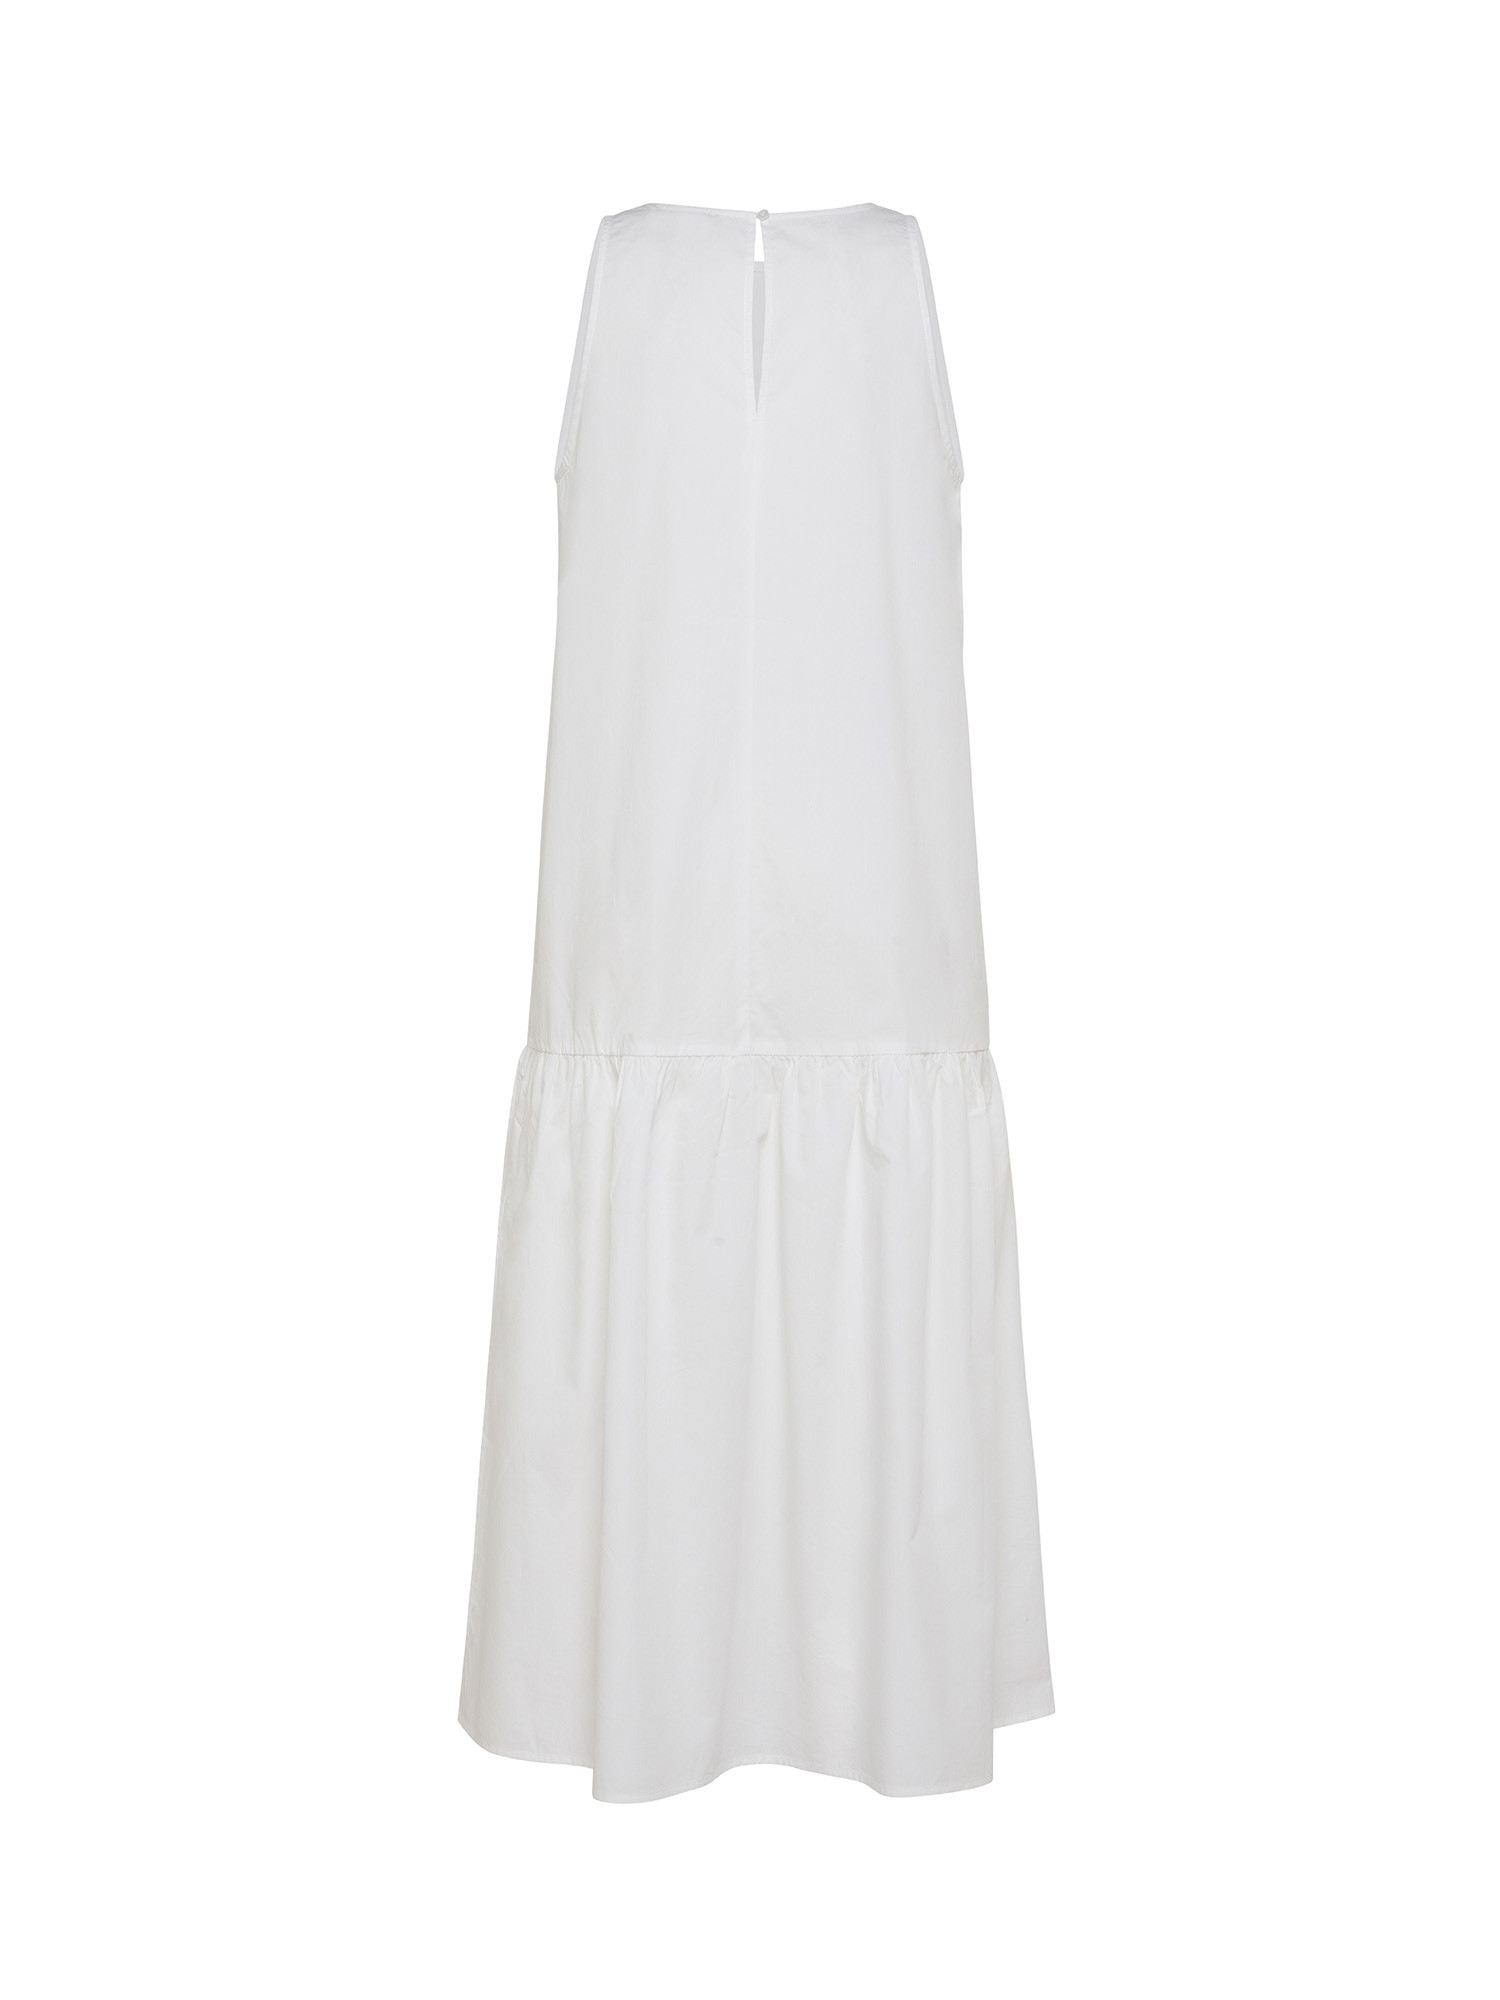 Ecoalf - Malaquita oversized dress, White, large image number 1